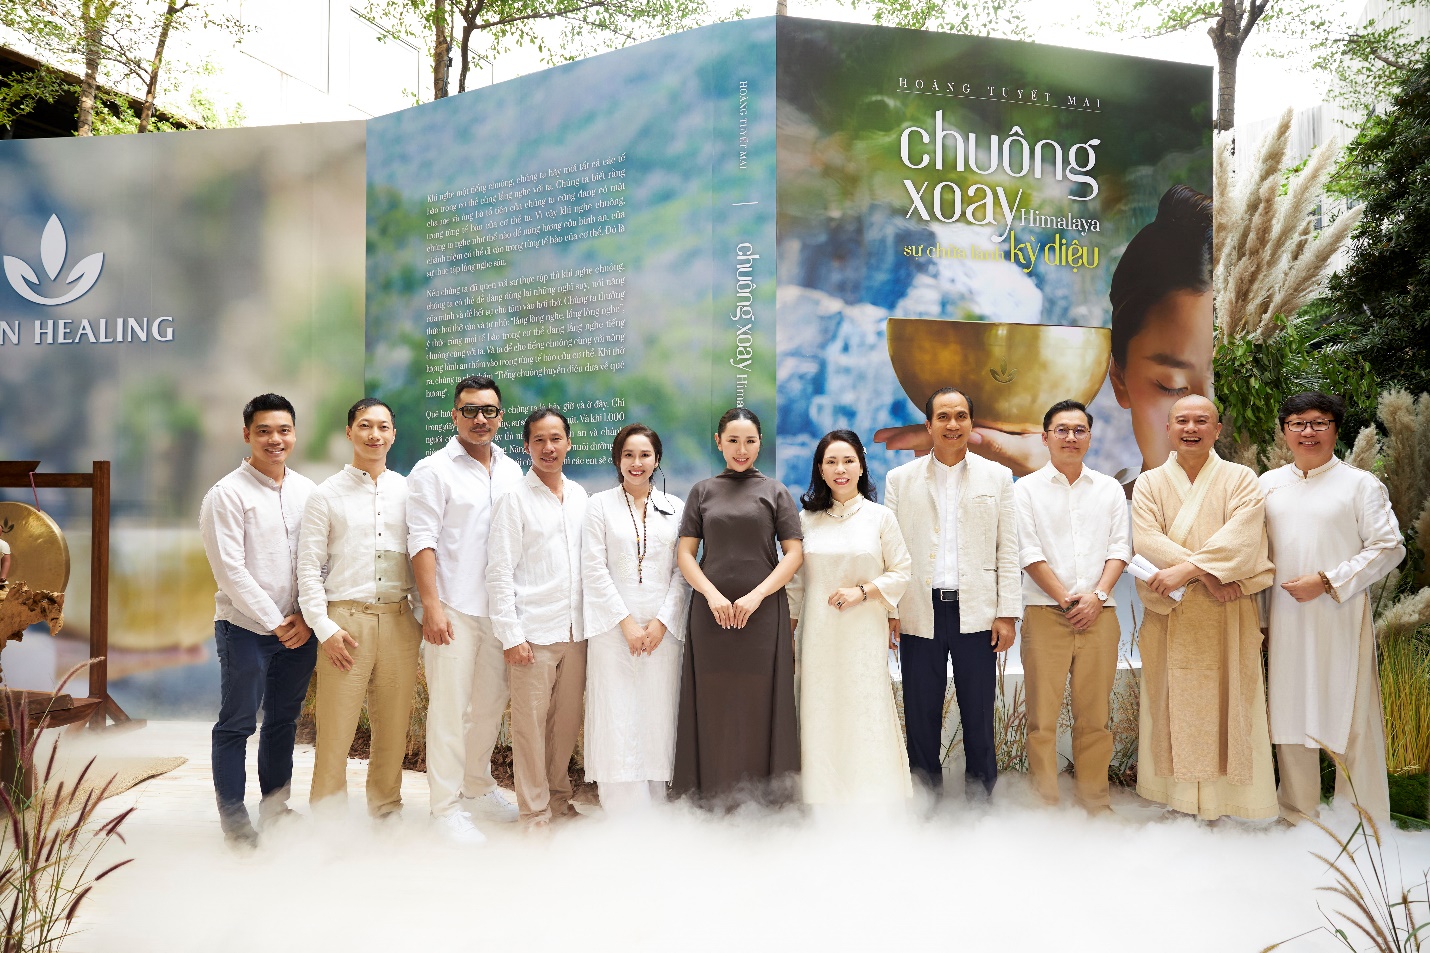 Điều gì giúp cho SHAN Healing và tác giả Hoàng Tuyết Mai thành công trong đào tạo âm thanh chữa lành bằng chuông xoay? - 1